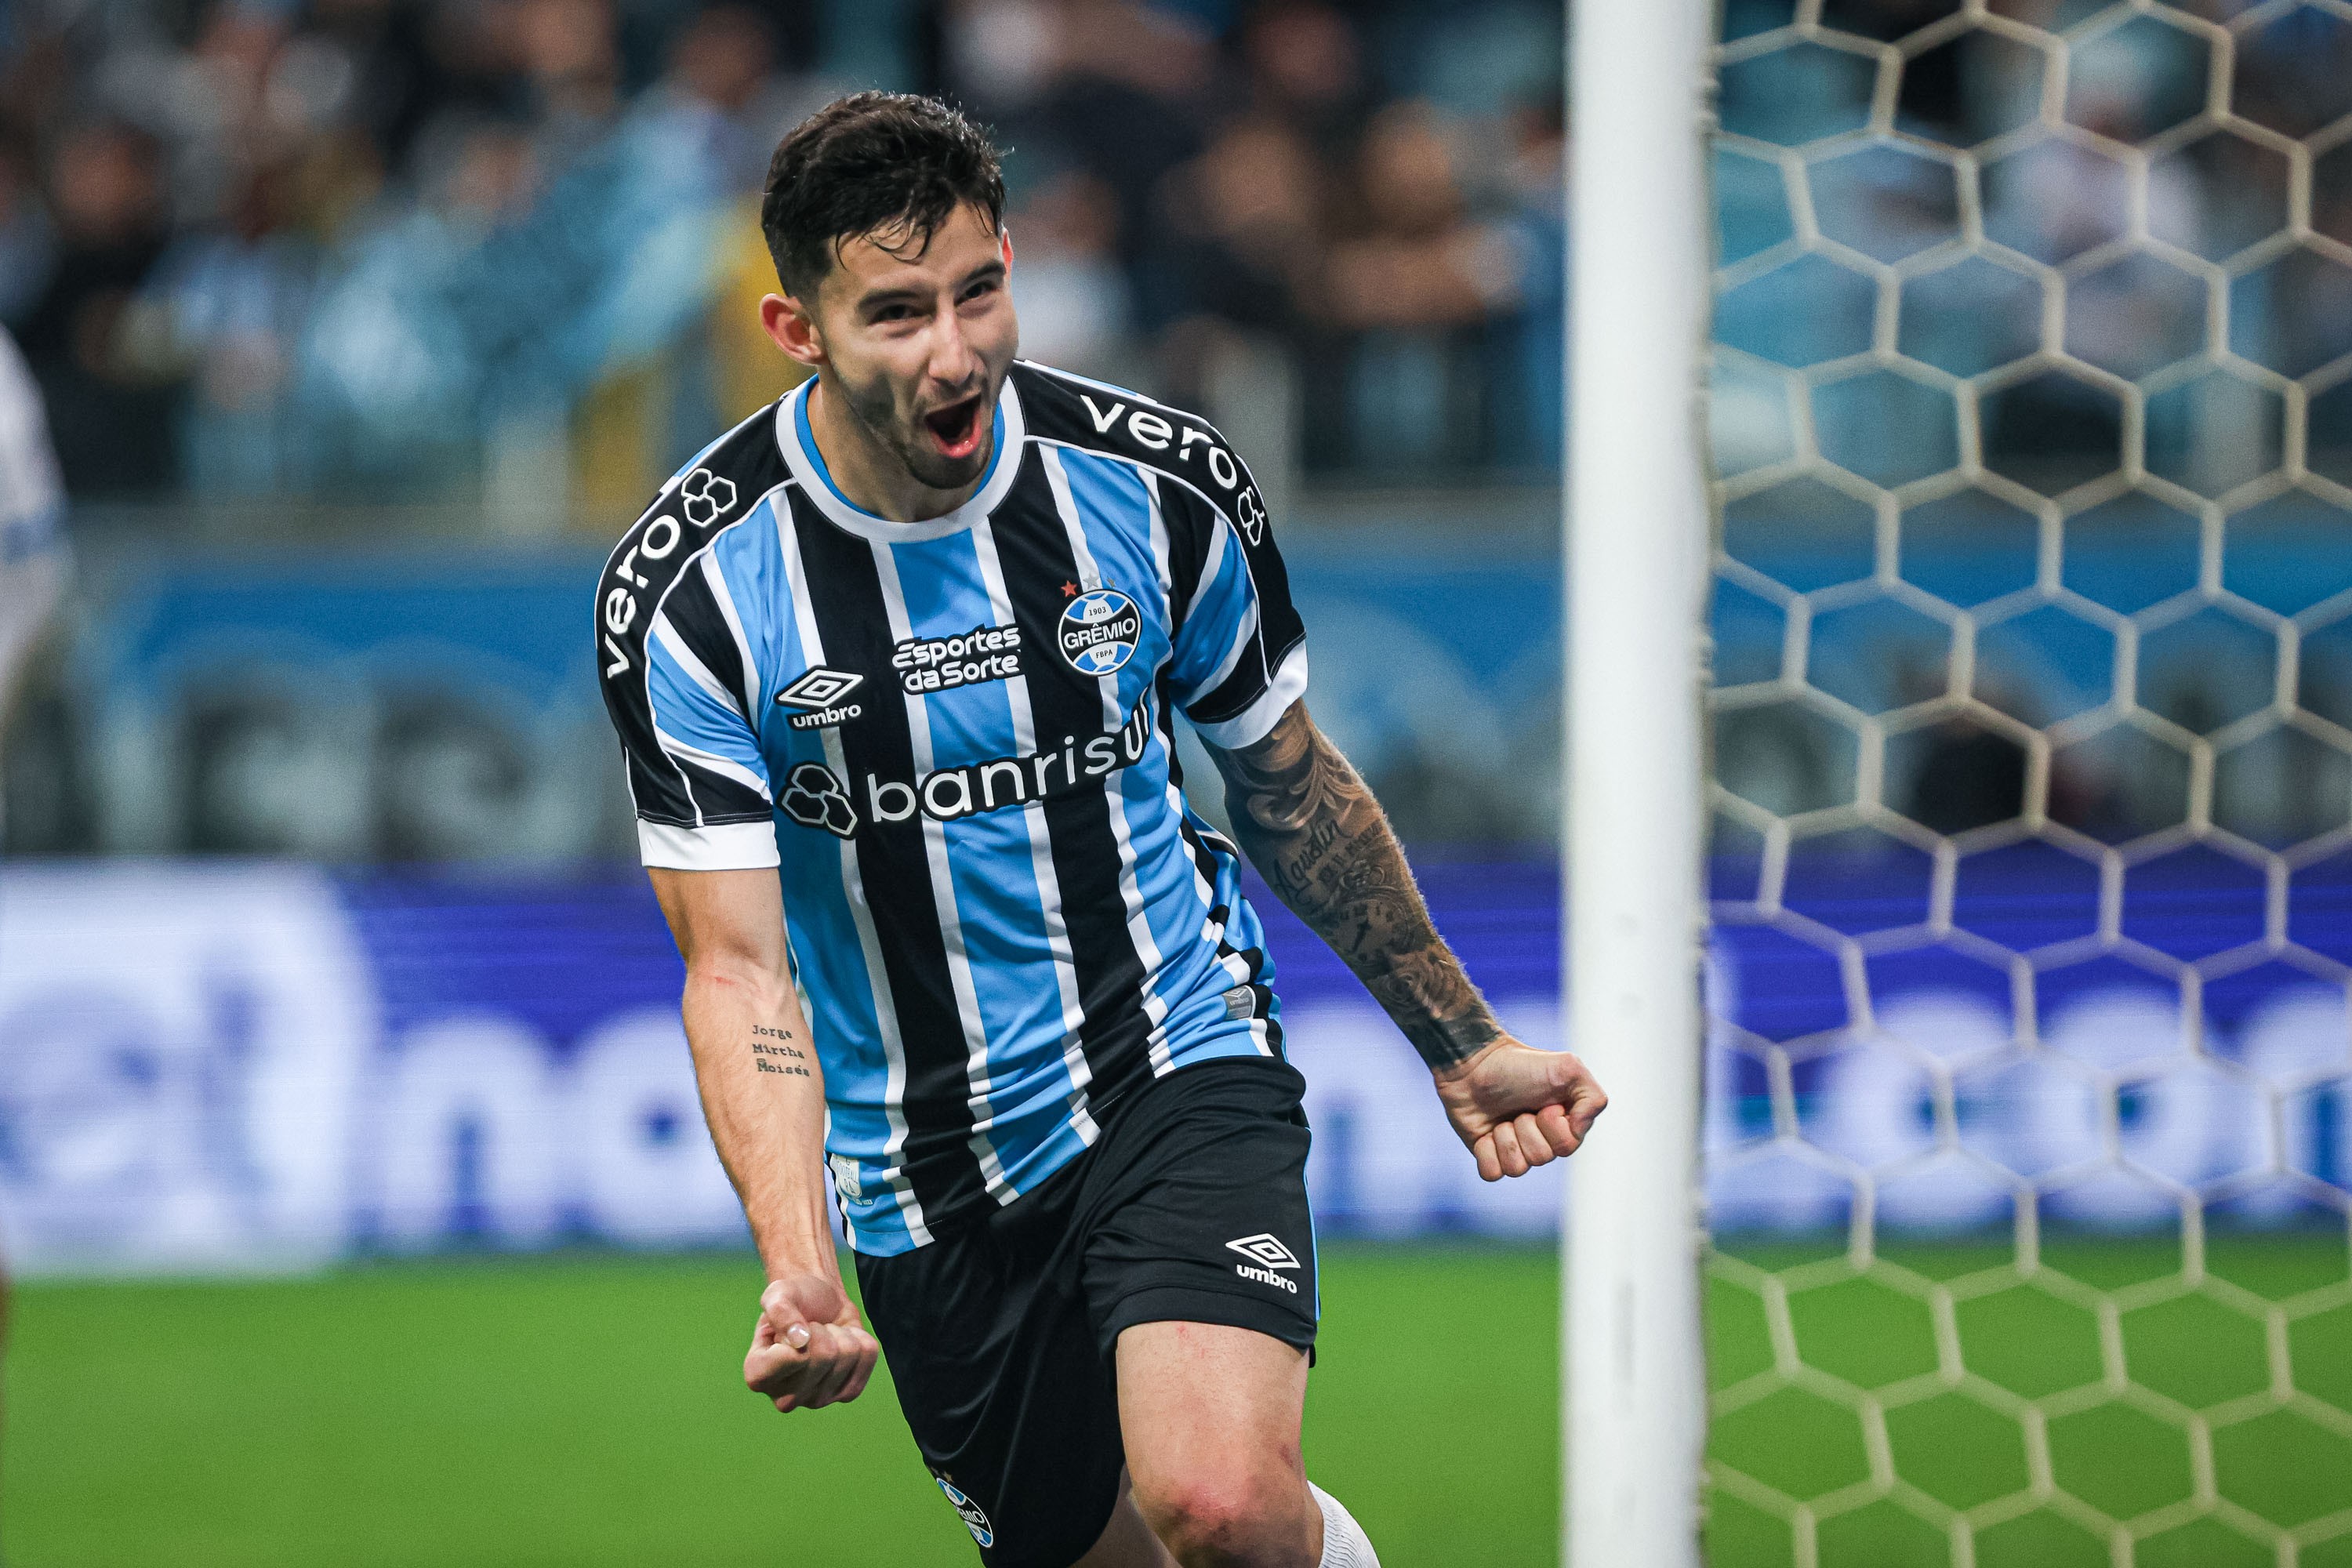 Líder em desarmes, Villasanti volta ao Grêmio em alta e pode ser trunfo de Renato no Gre-Nal